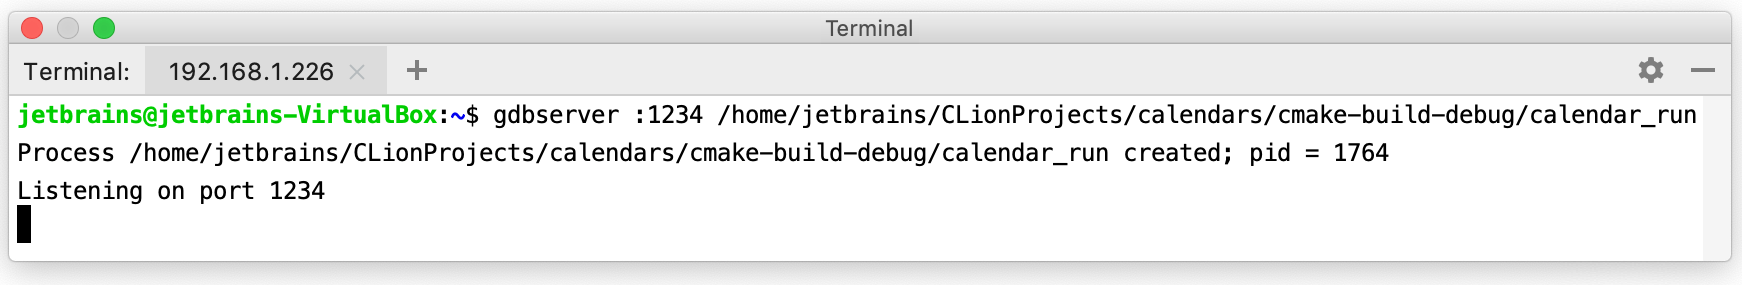 remote ssh terminal